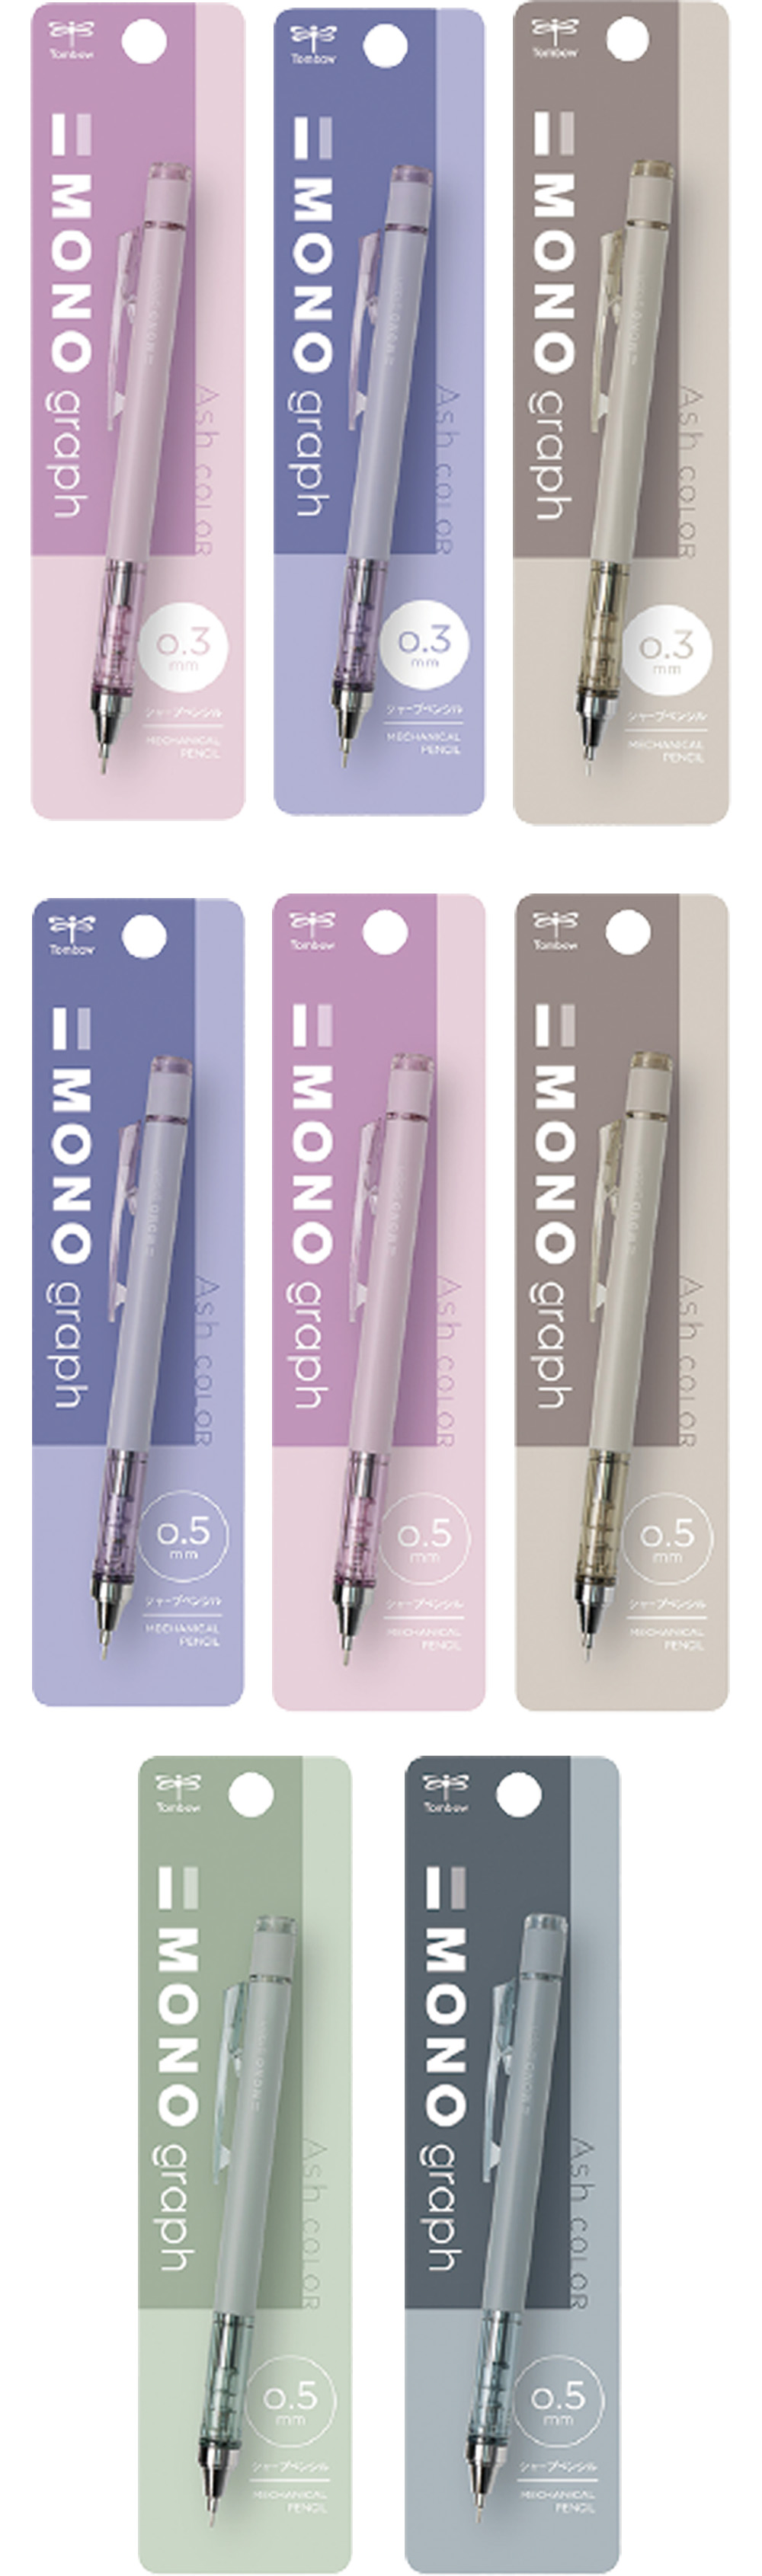 0.5 自動鉛筆 自動鉛筆 紫色 自動鉛筆 綠色